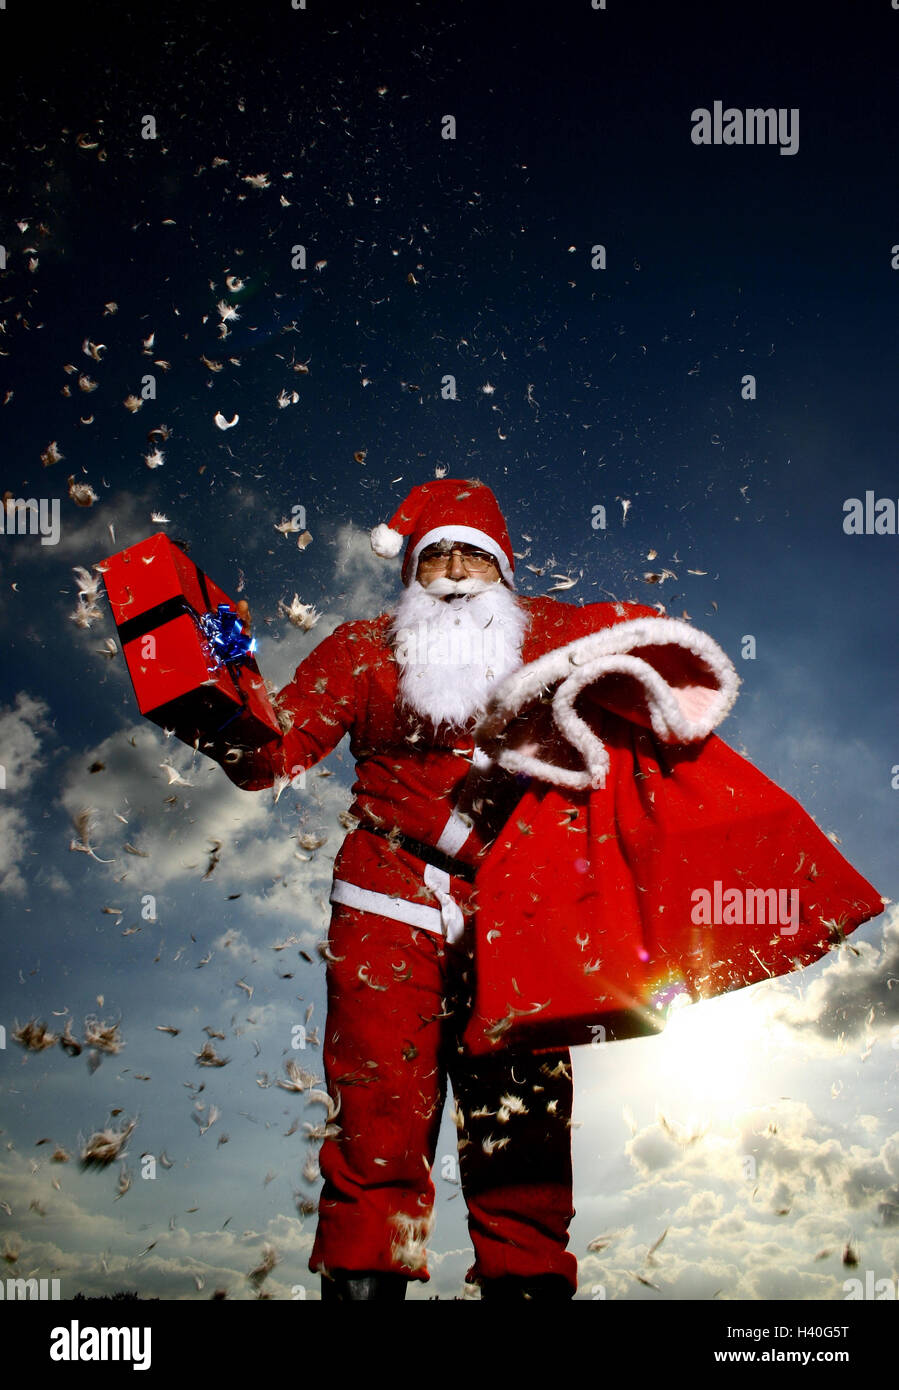 Natale,natale,pacchetto regalo di Natale, Babbo Natale,Santa Claus'  bag,Santa Claus' cap,Santa Claus' costume,indietro  luce,bag,barba,cap,costume,custom,camuffare,travestito,distribuire,vestito,caduta,giù,festosa,dono,borsa  regalo,pacchetto regalo,dare ...